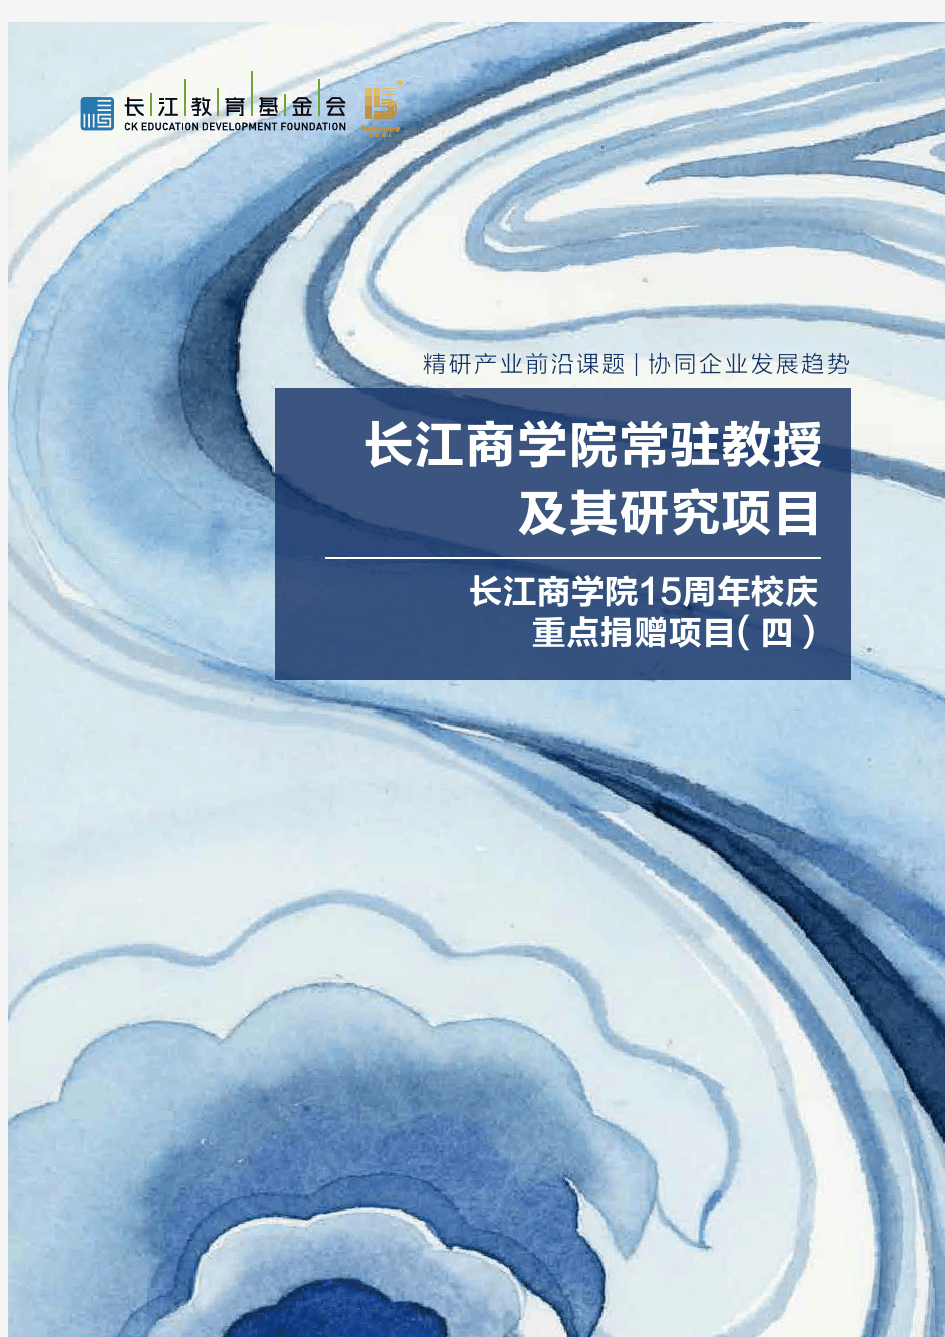 长江商学院常驻教授及其研究项目长江商学院15周年校庆-重点捐赠